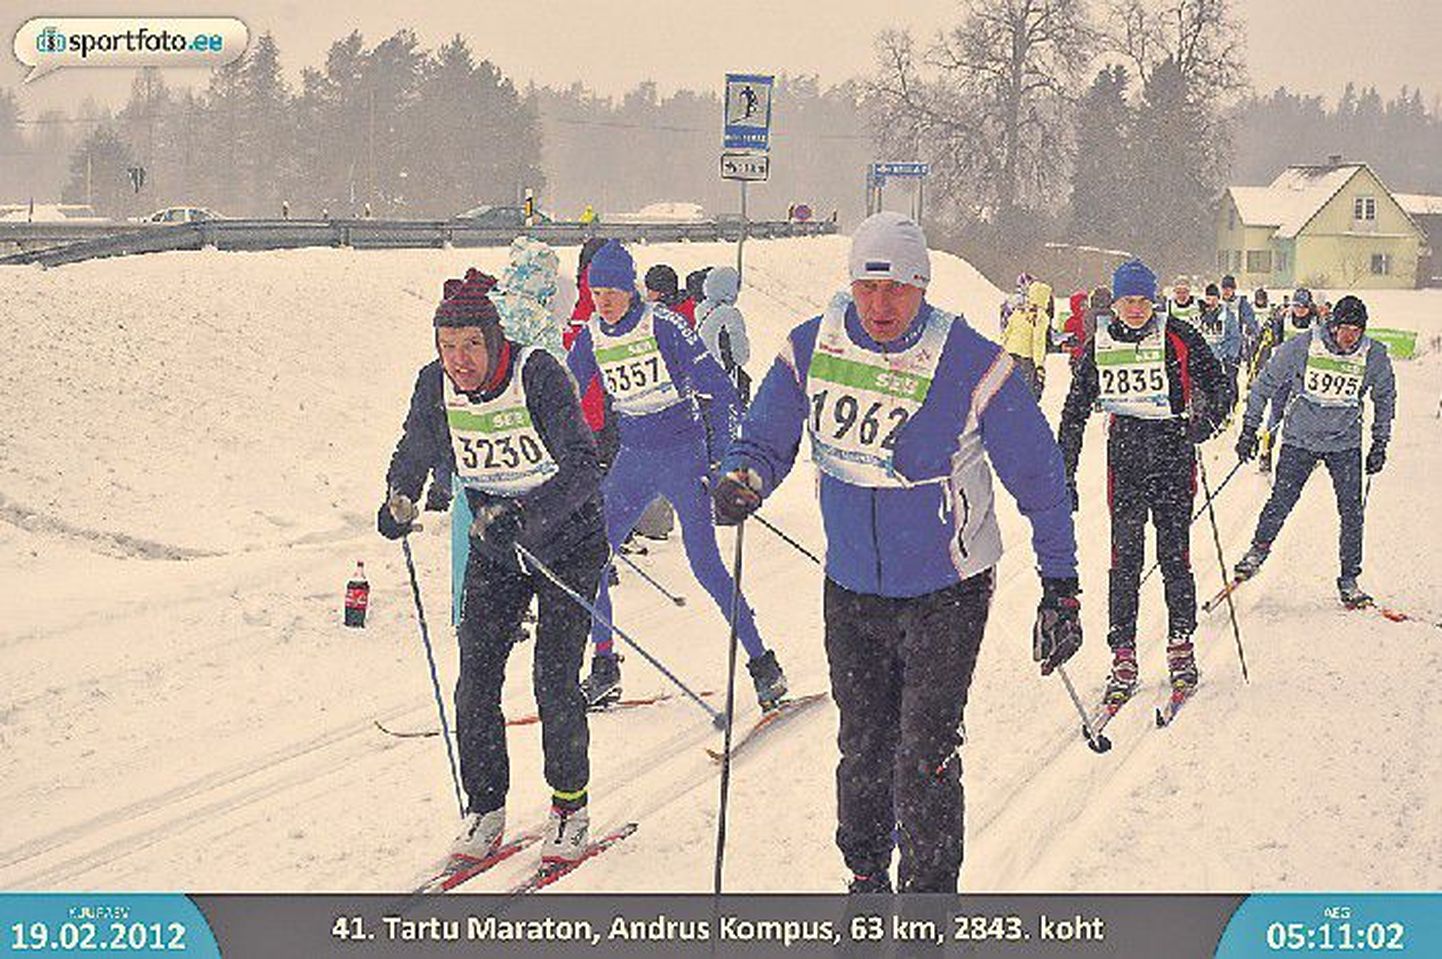 Директор Тартуского центра профобразования Андрус Компус, участвовавший в этом году в Тартуском марафоне (номер на груди 1962), сказал, что любит лыжный спорт, однако не стал комментировать участие в лыжных соревнованиях во время зарубежных командировок.